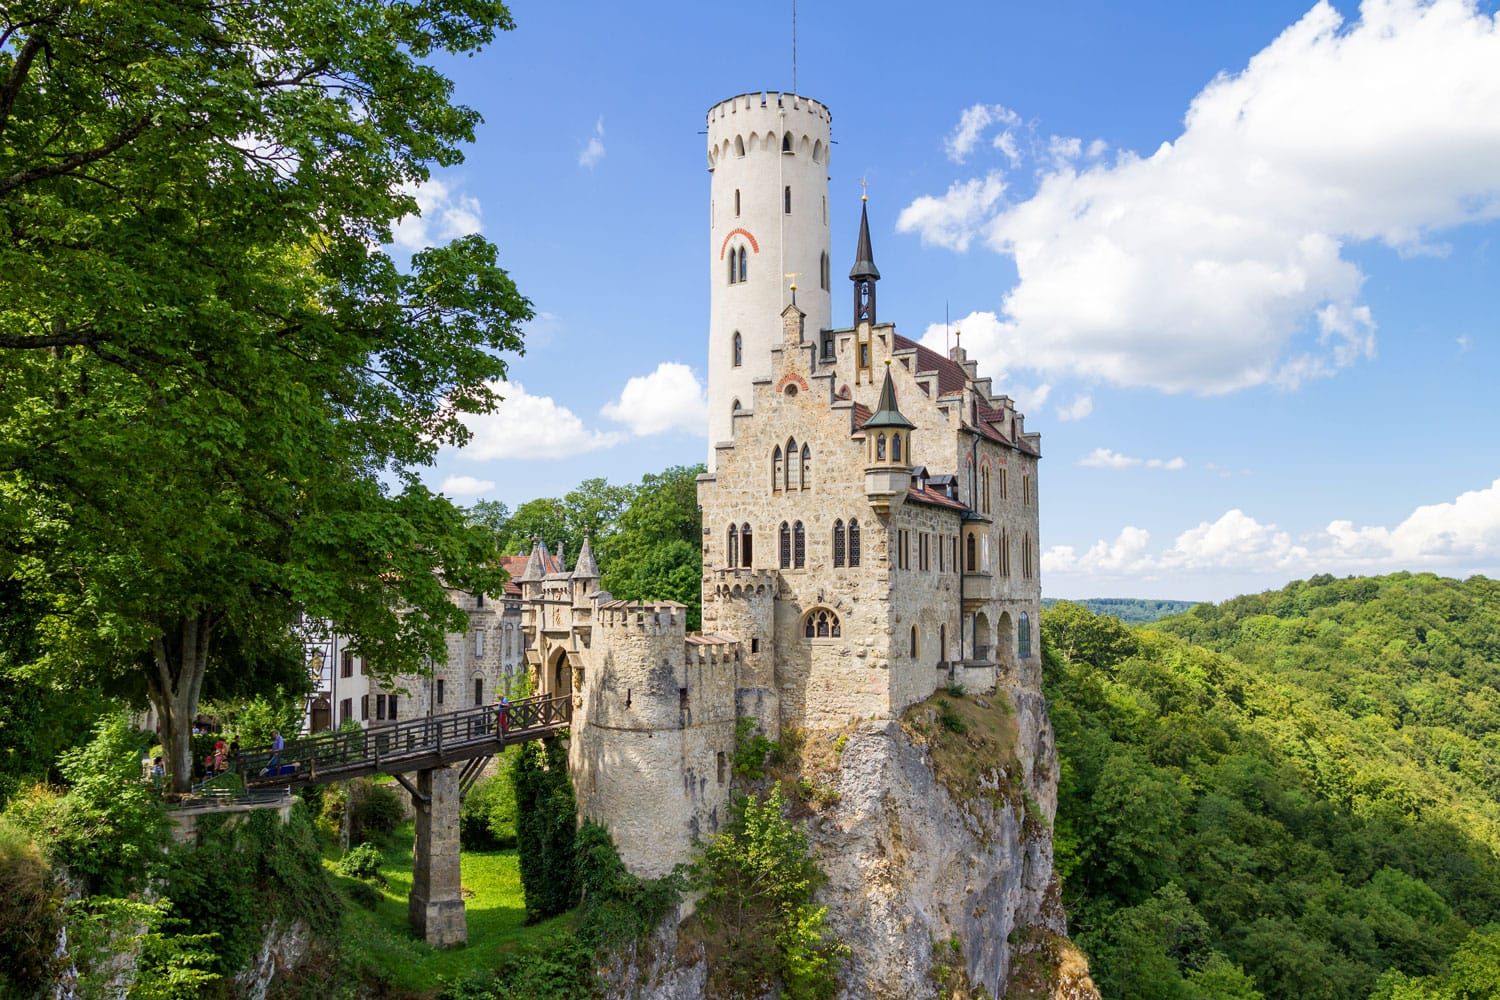 Castle Lichtenstein in Germany